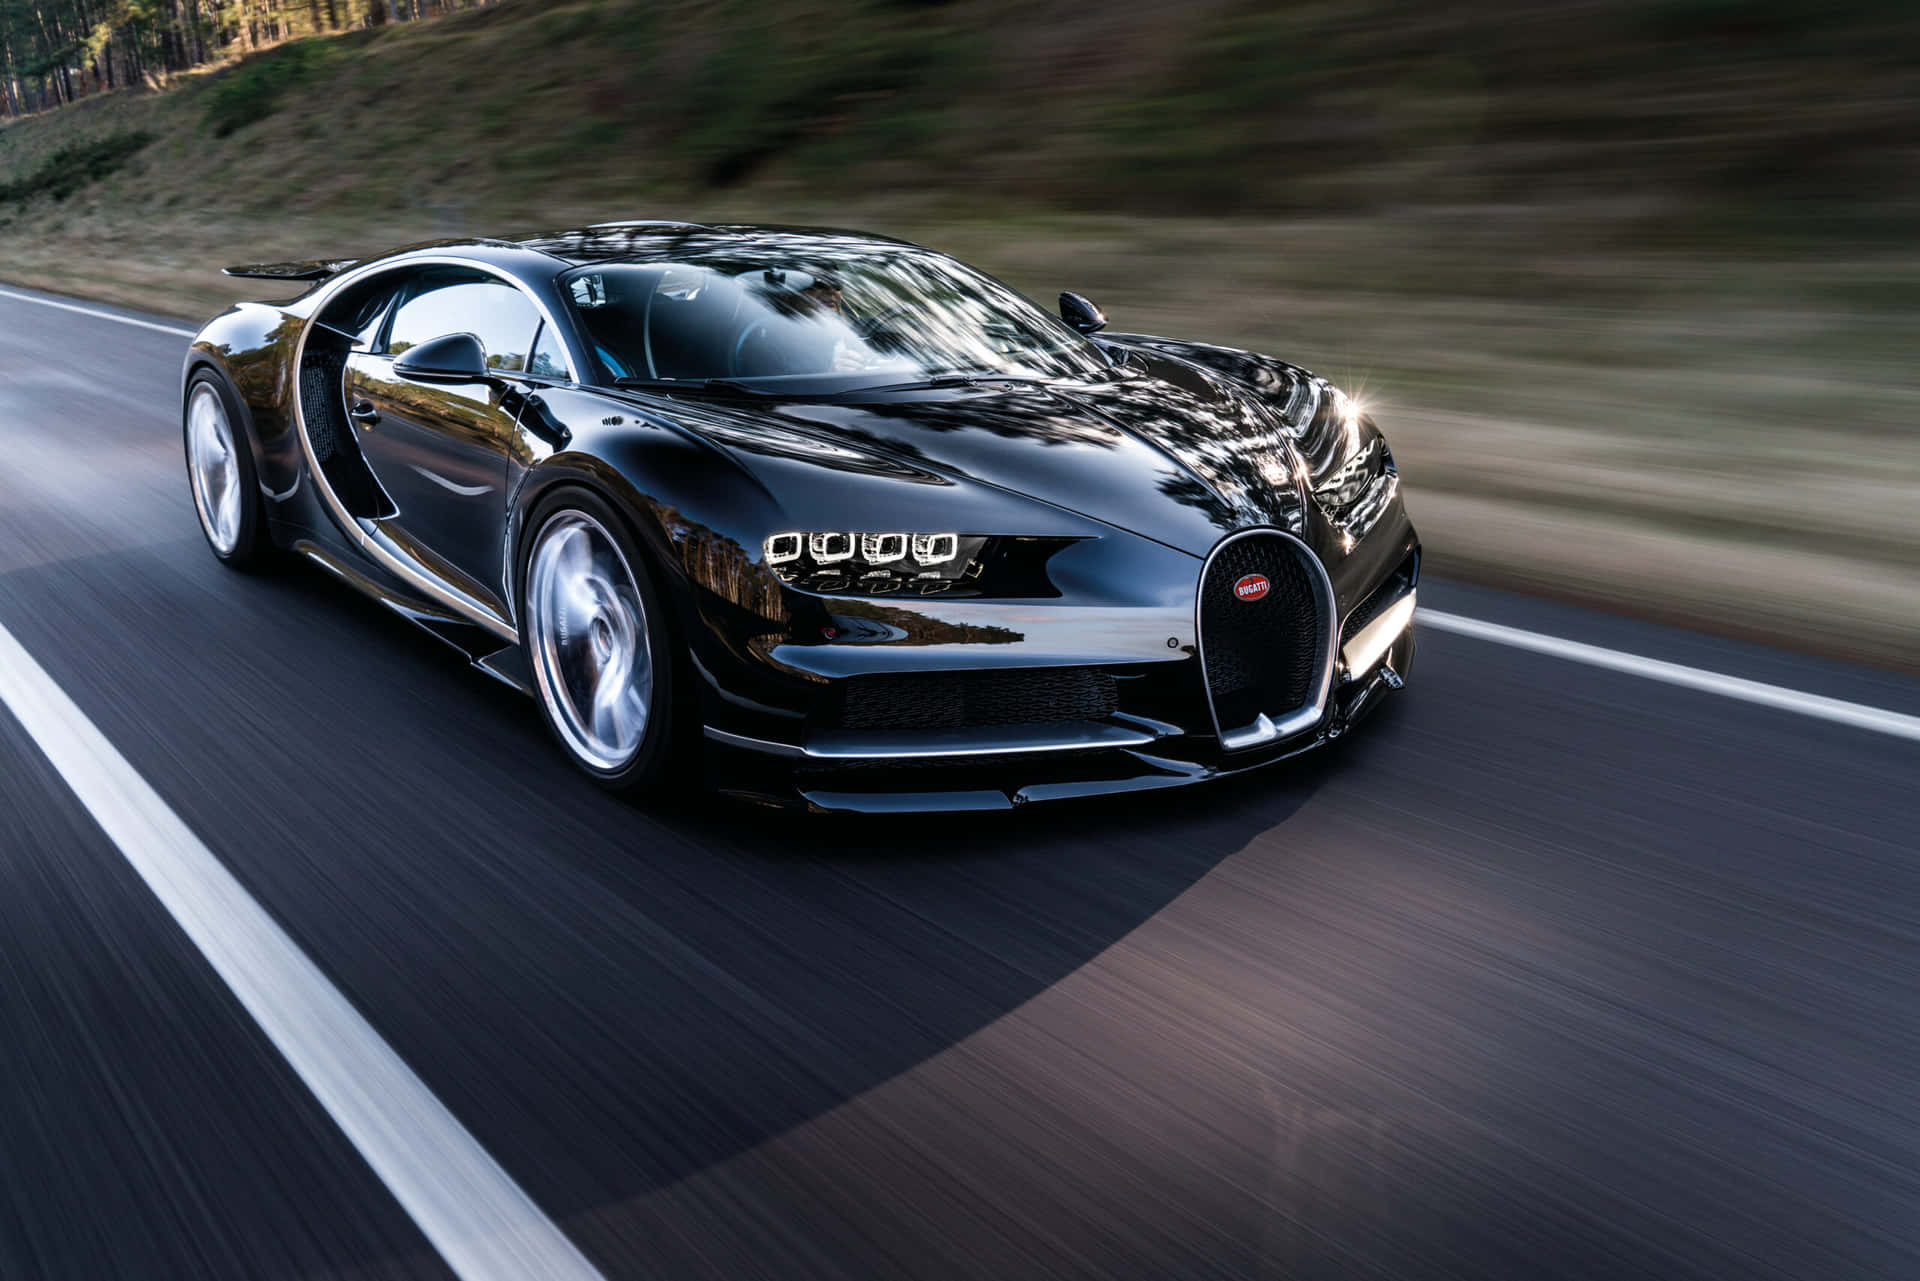 "A glimpse of the Best Bugatti" Wallpaper